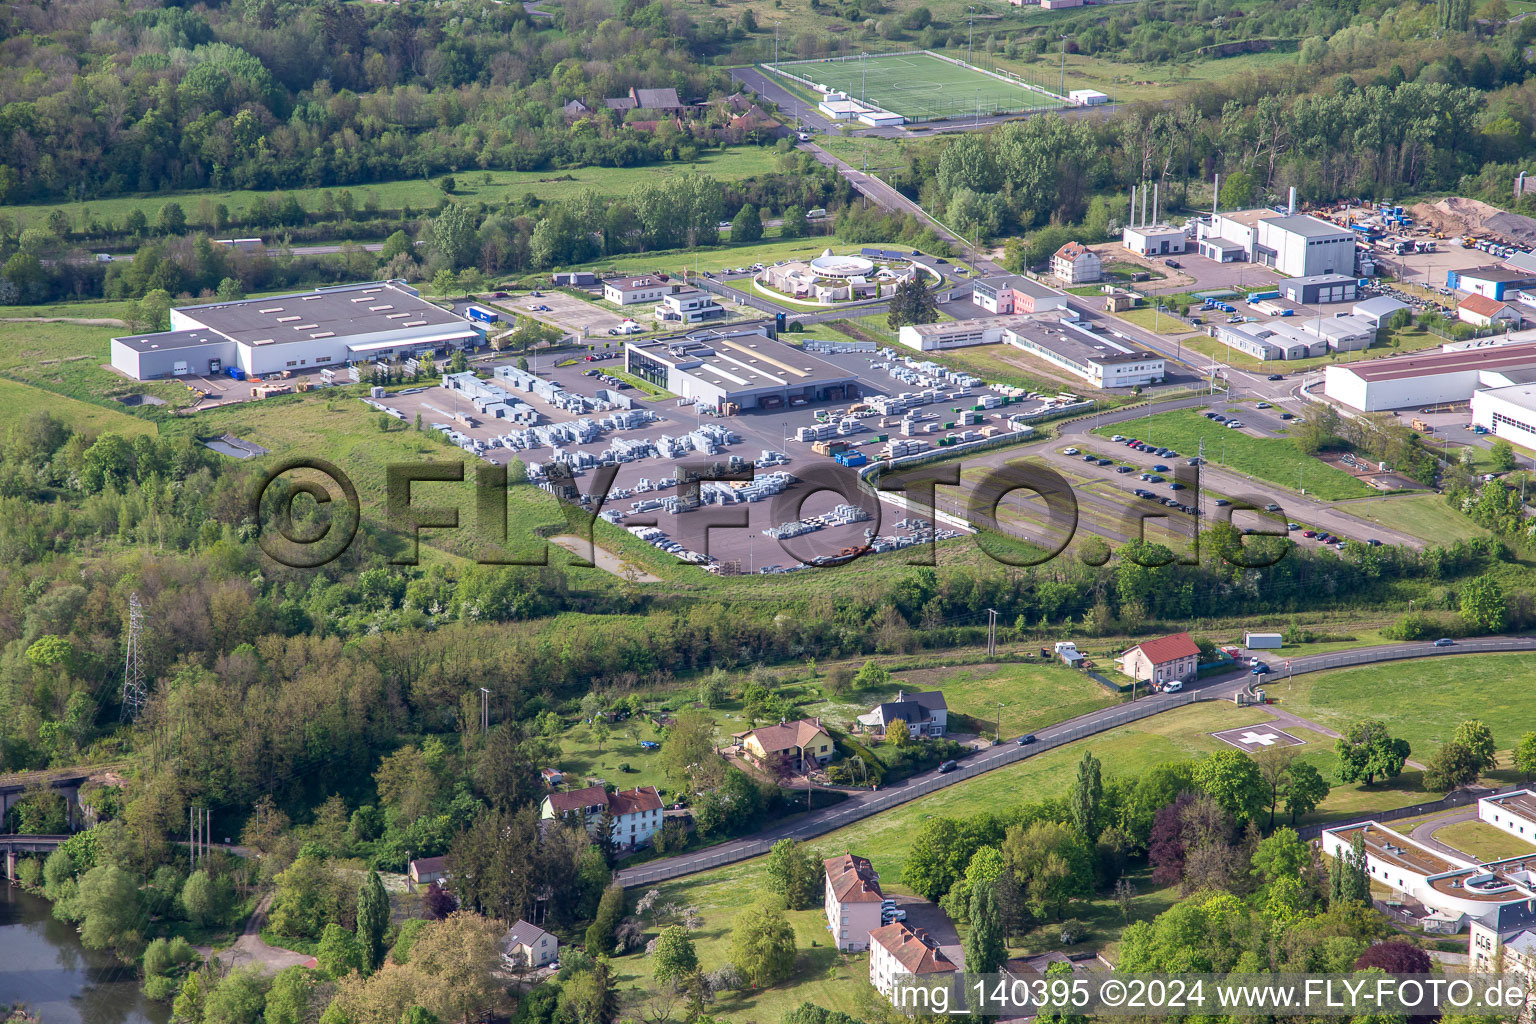 Vue aérienne de Siebert Sarl, JK Technic et Acbat SAS à le quartier Zone Industrielle du Grand Bois Fayencerie in Saargemünd dans le département Moselle, France